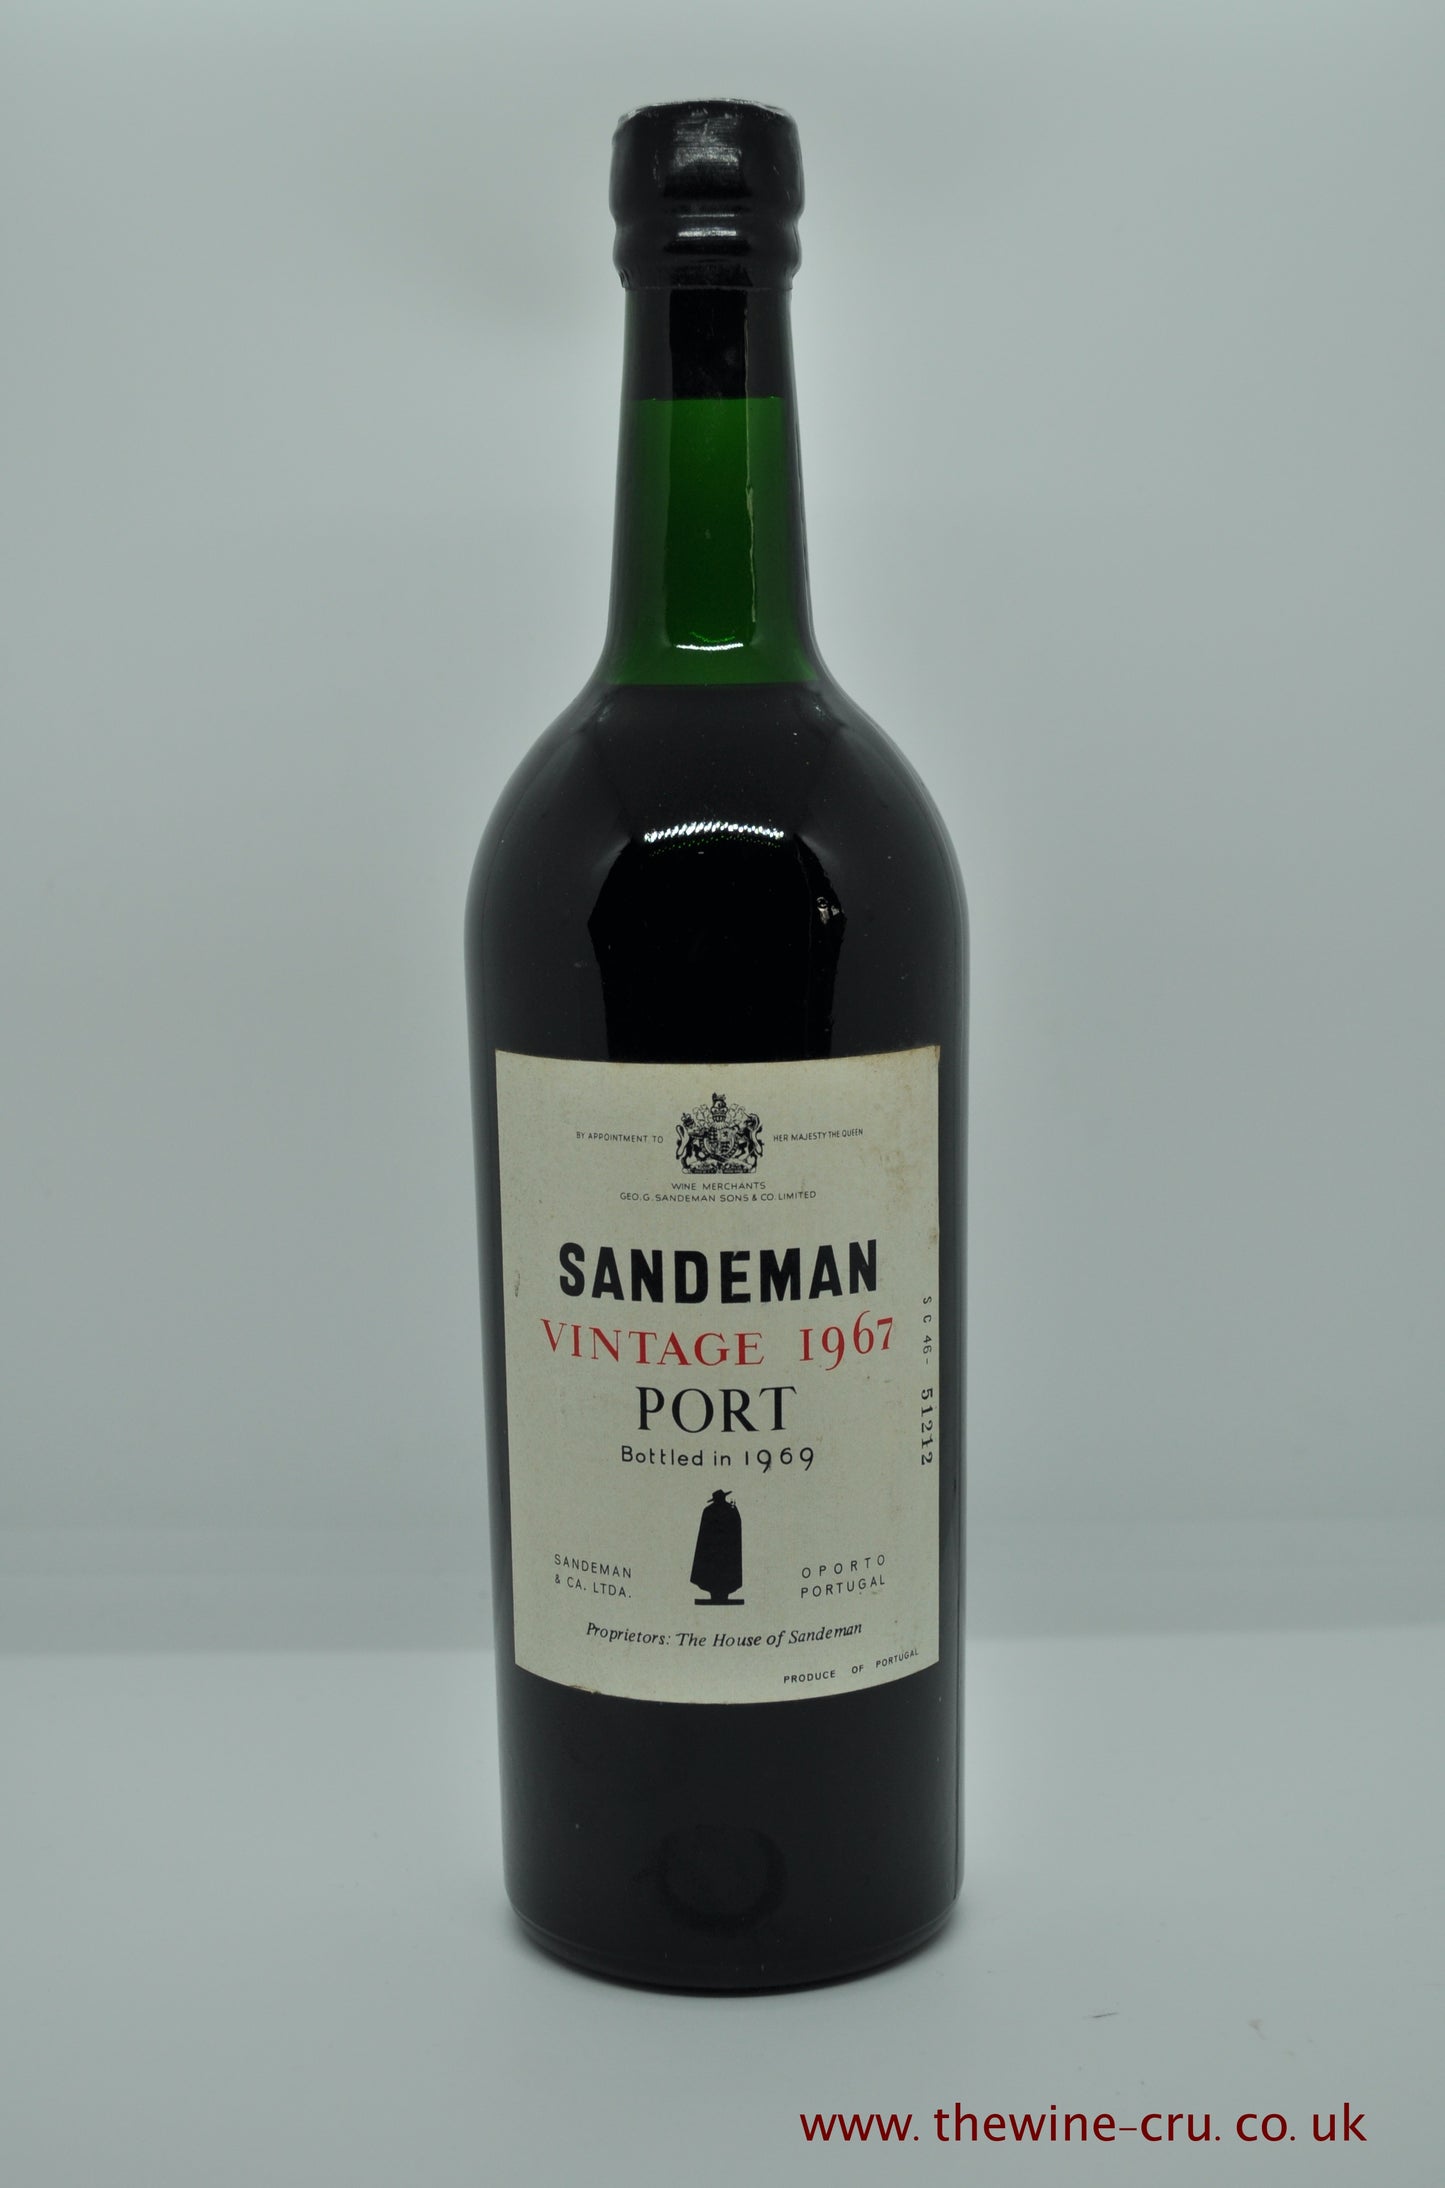 1967 vintage port wine. Sandeman vintage port 1967. Portugal. Immediate delivery. Free local delivery.